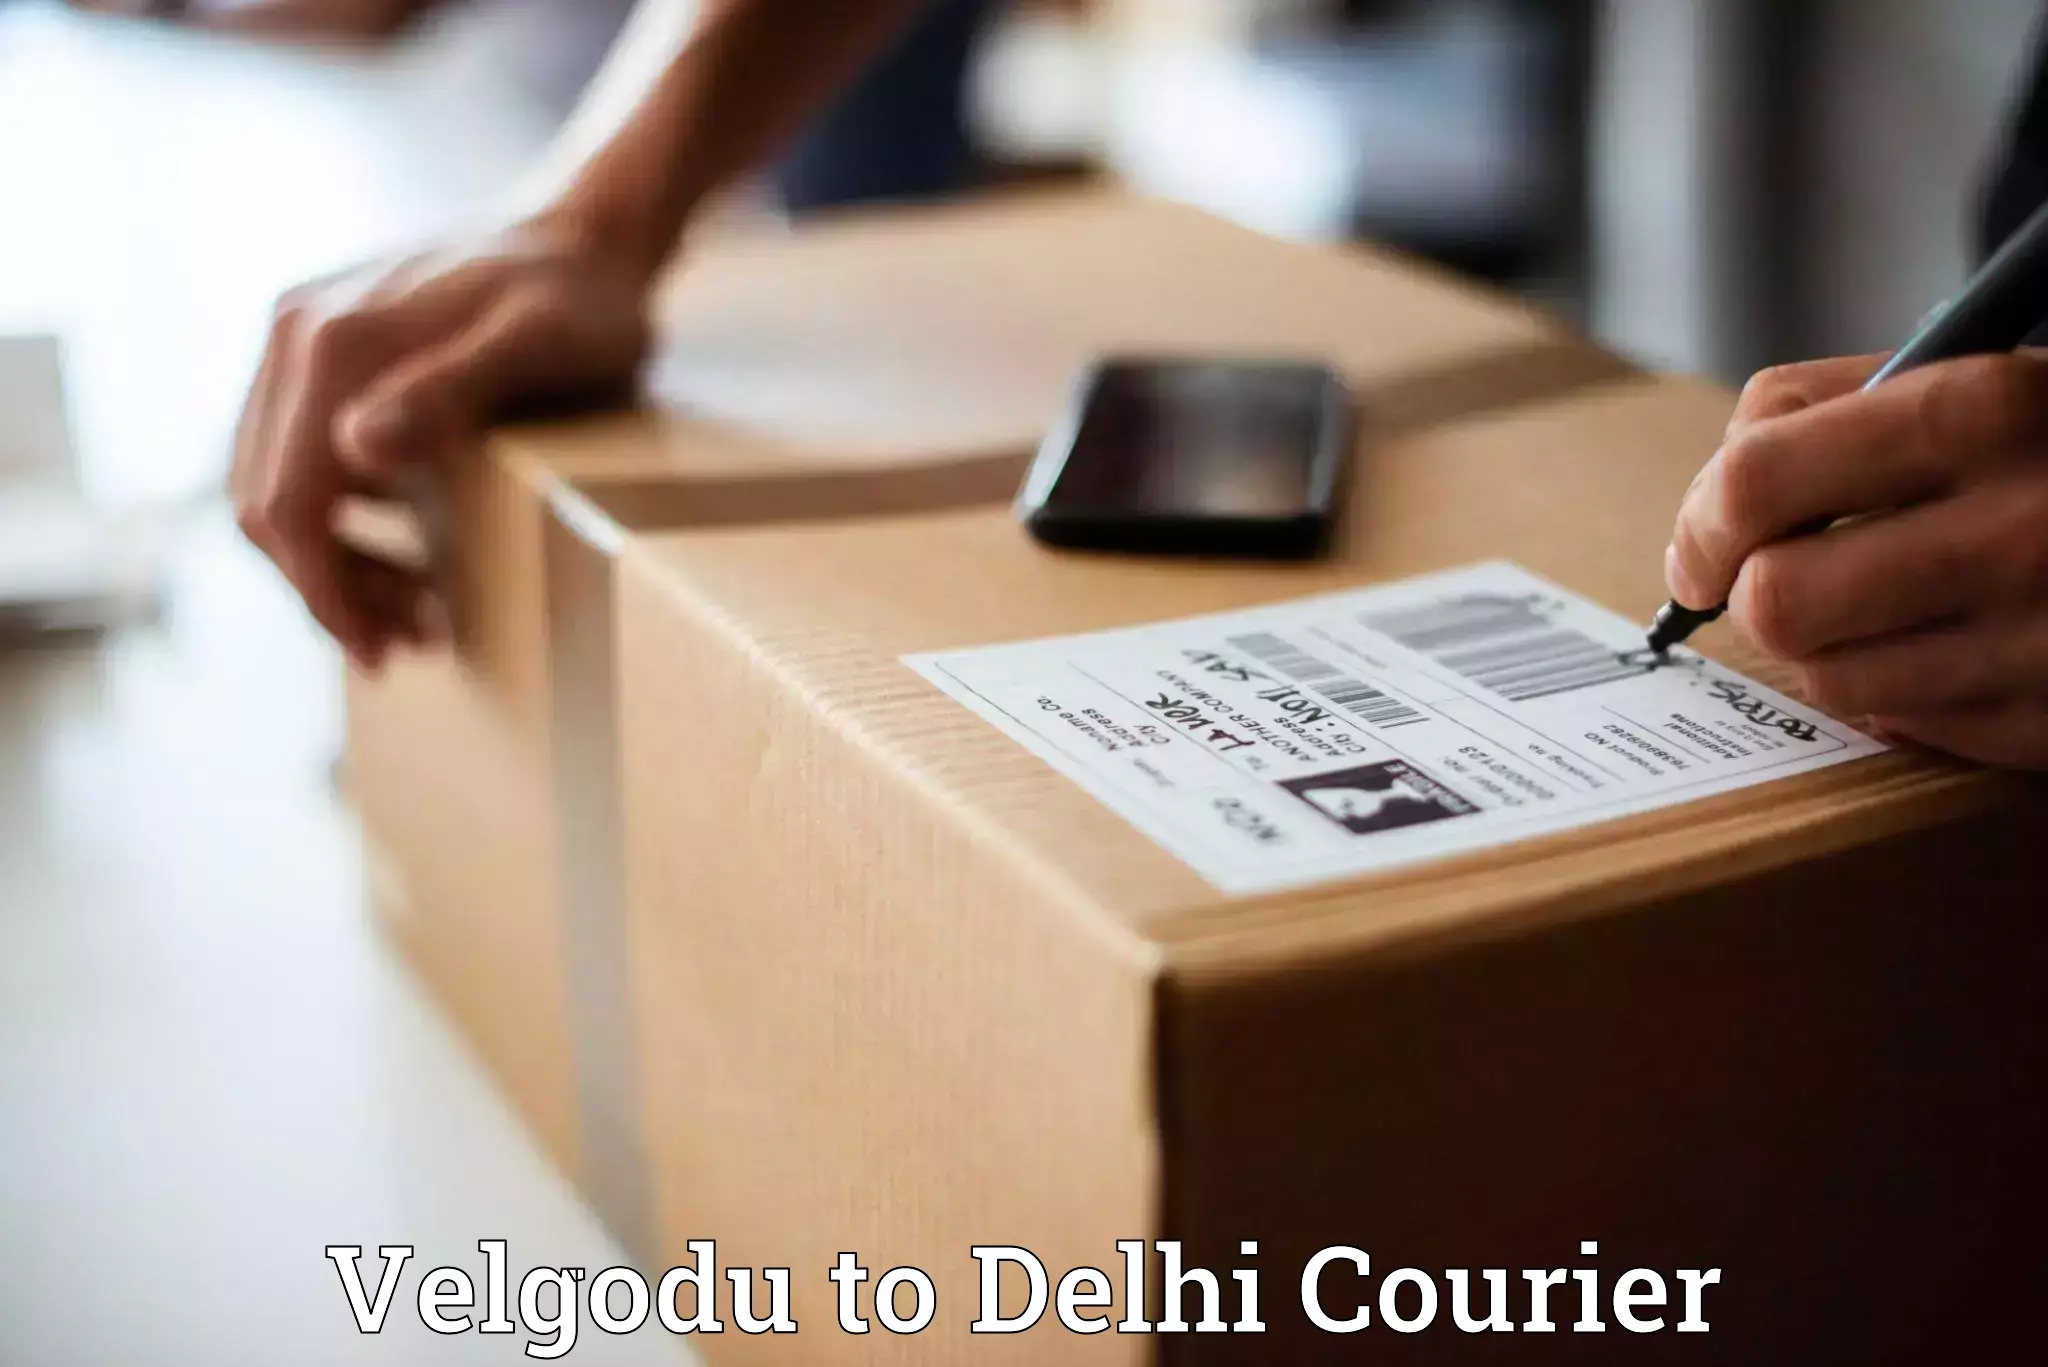 Professional parcel services Velgodu to Jawaharlal Nehru University New Delhi